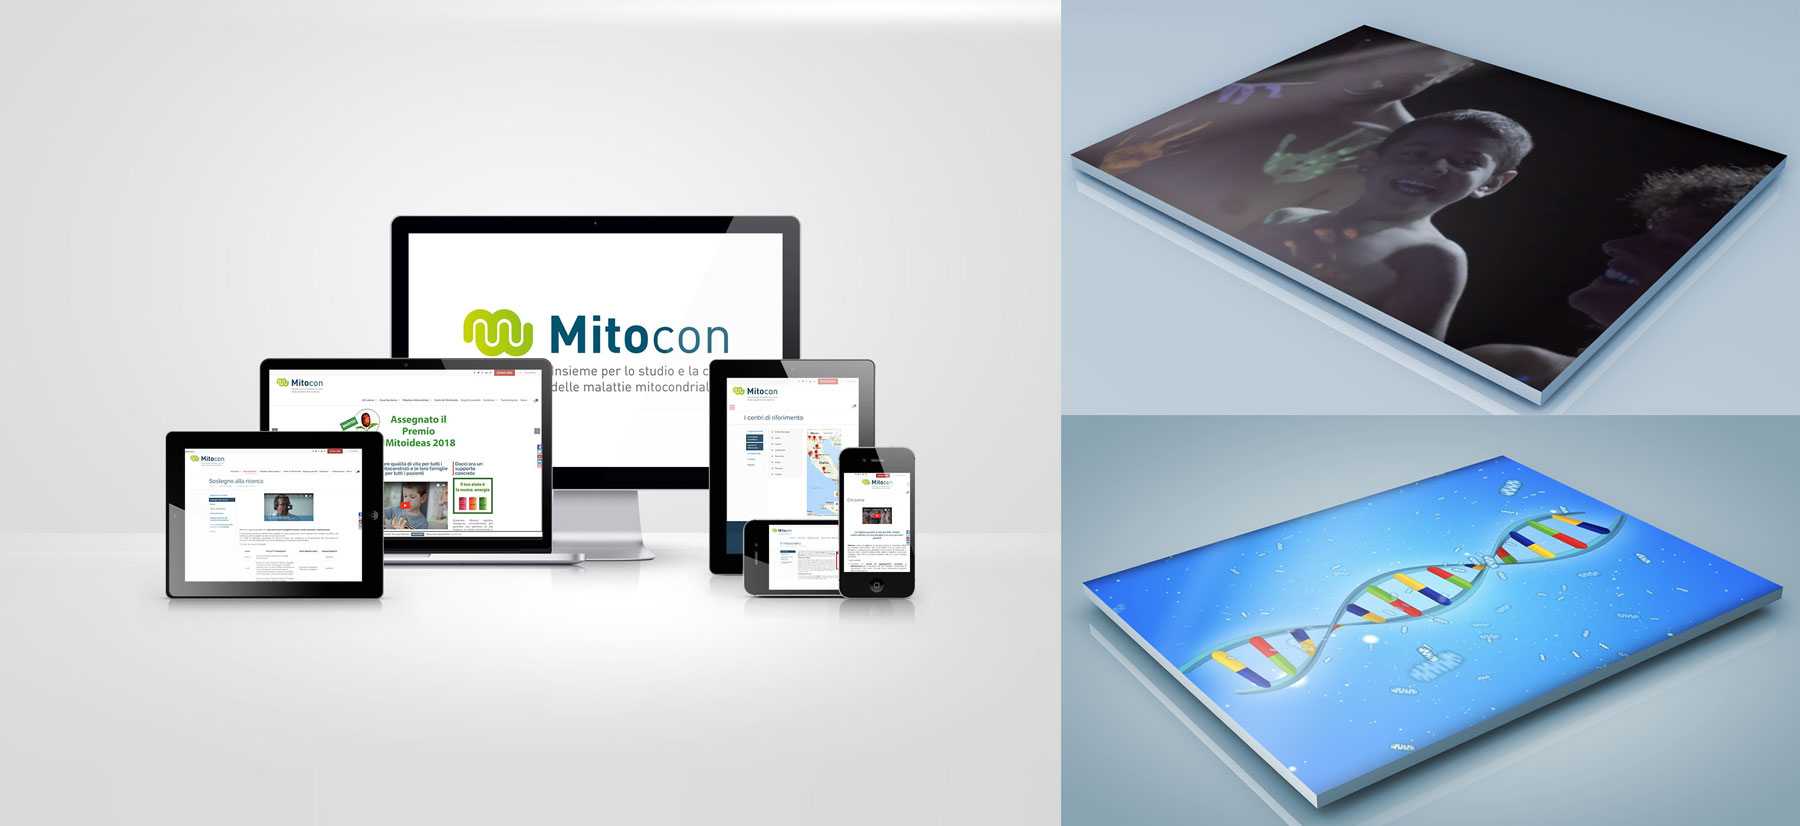 Mitocon_device